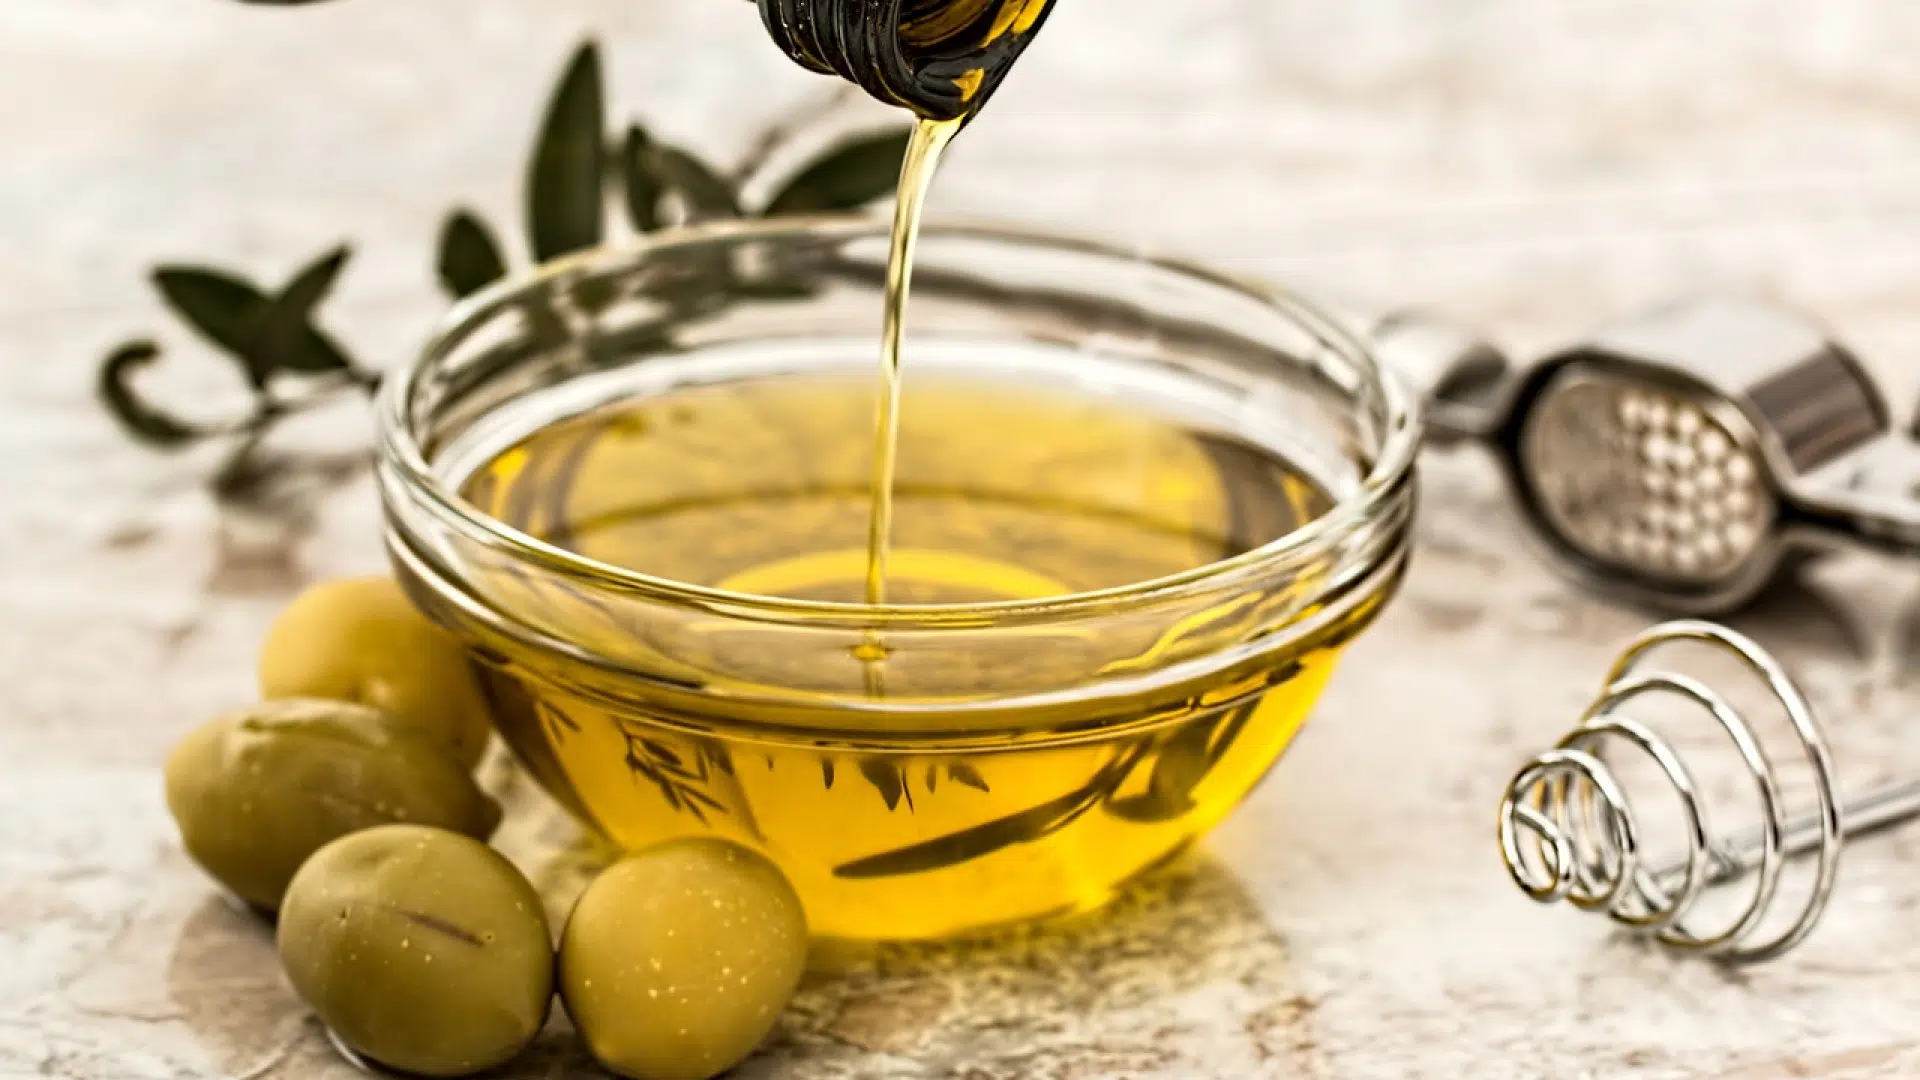 Achat de bidon d’huile d’olive : quels avantages ?